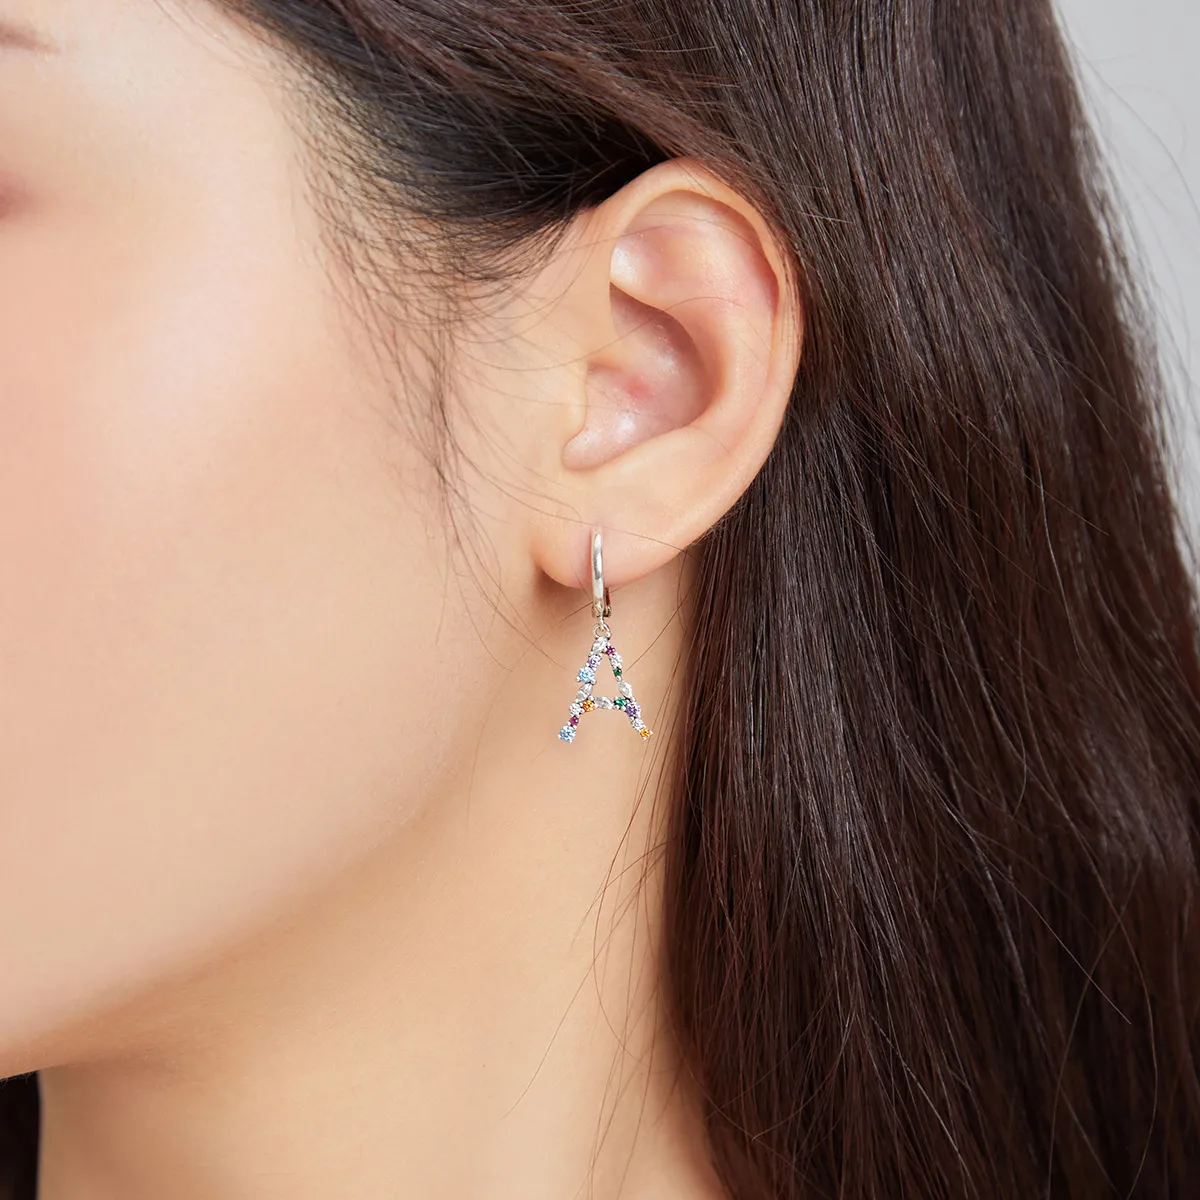 Pandora Style Romantic Girl Hoop Earrings - SCE1030